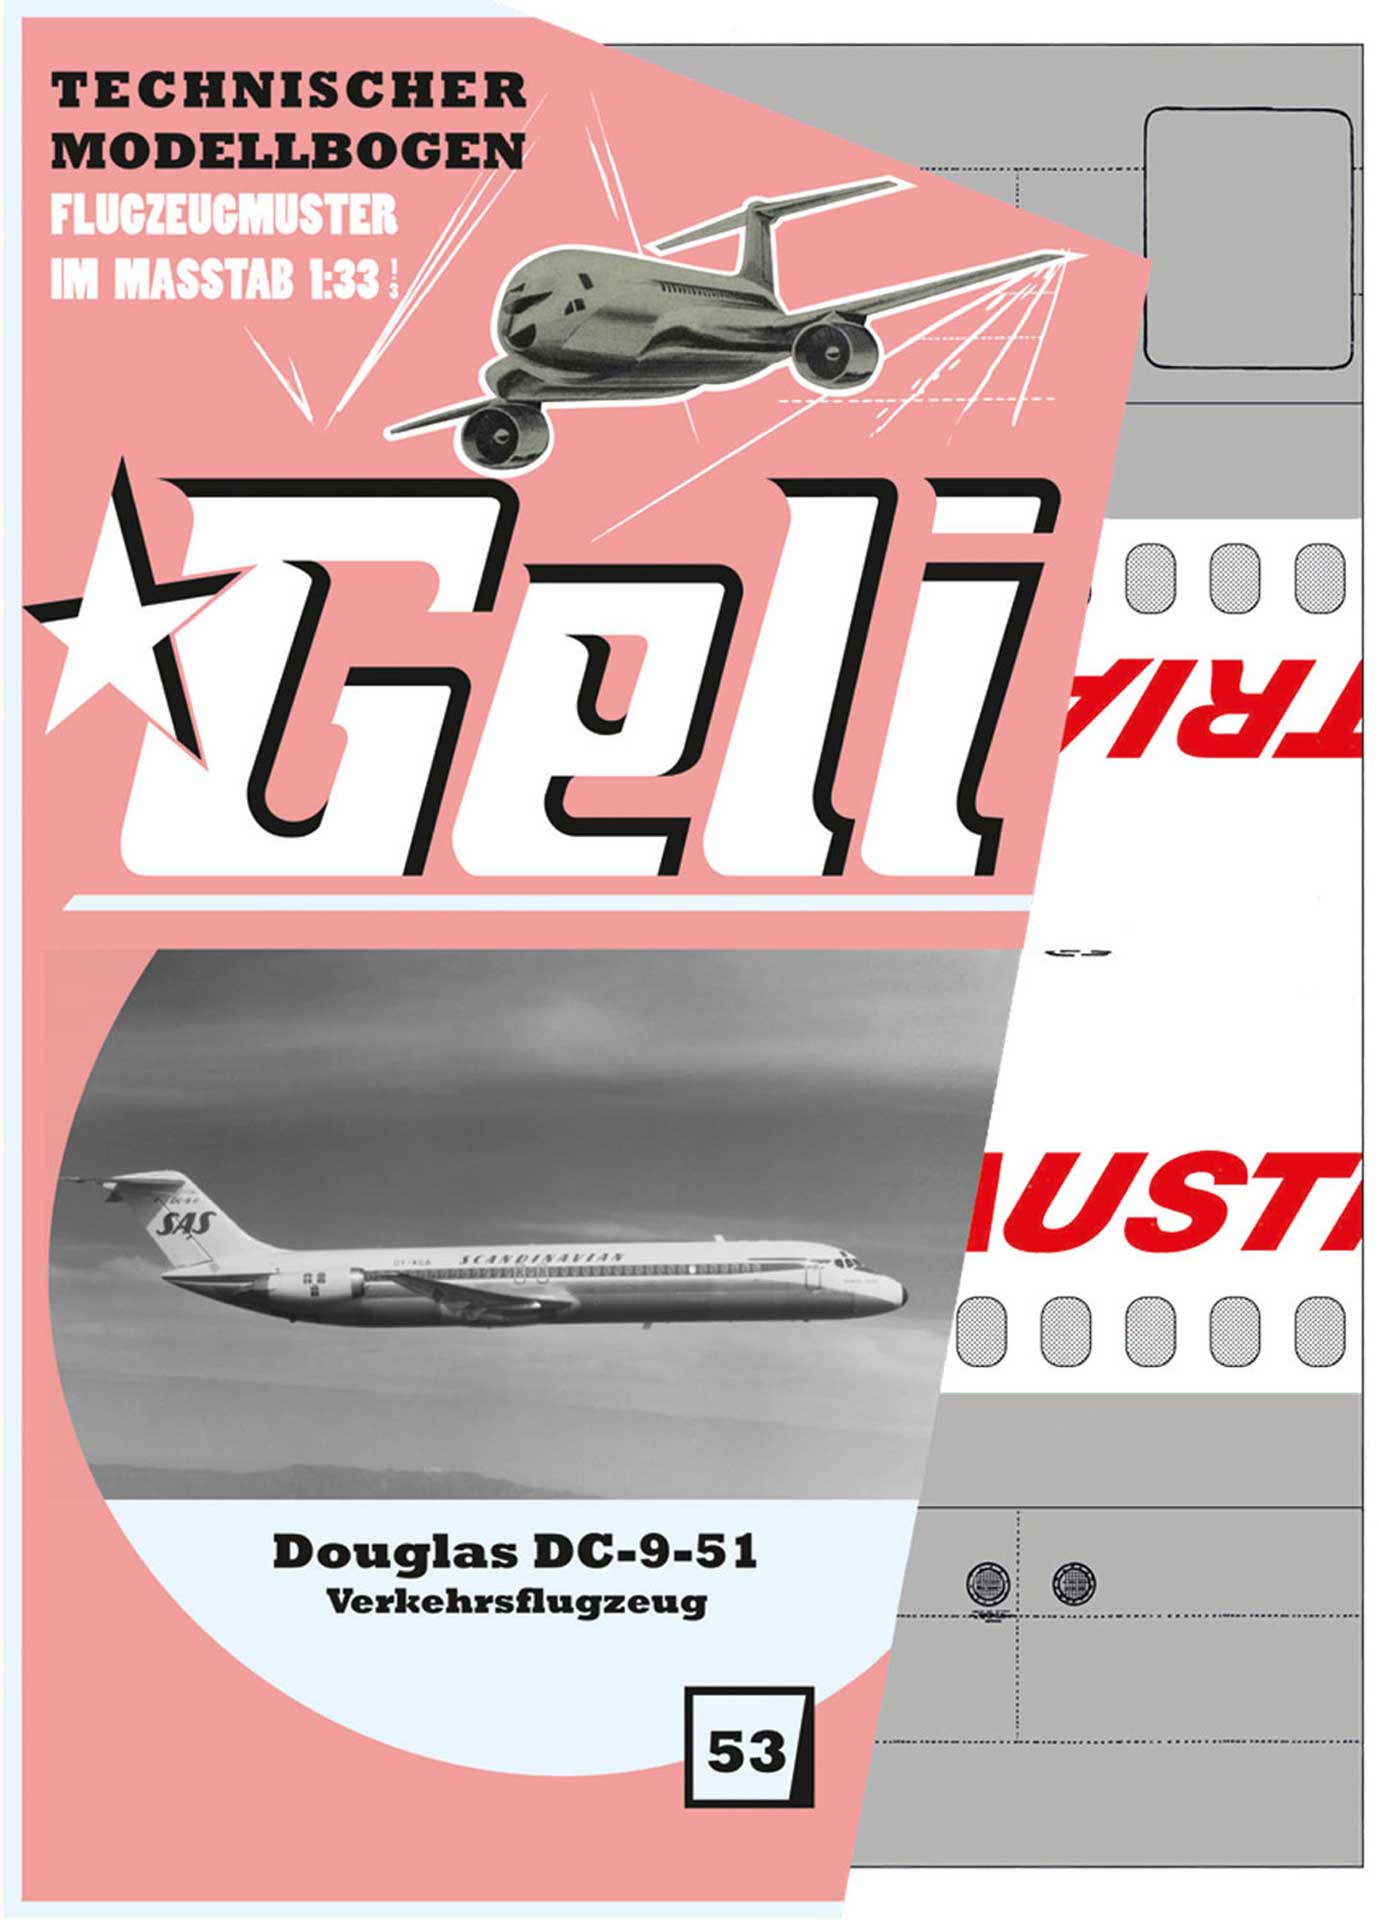 GELI DOUGLAS DC-9 # 53 KARTONMODELL